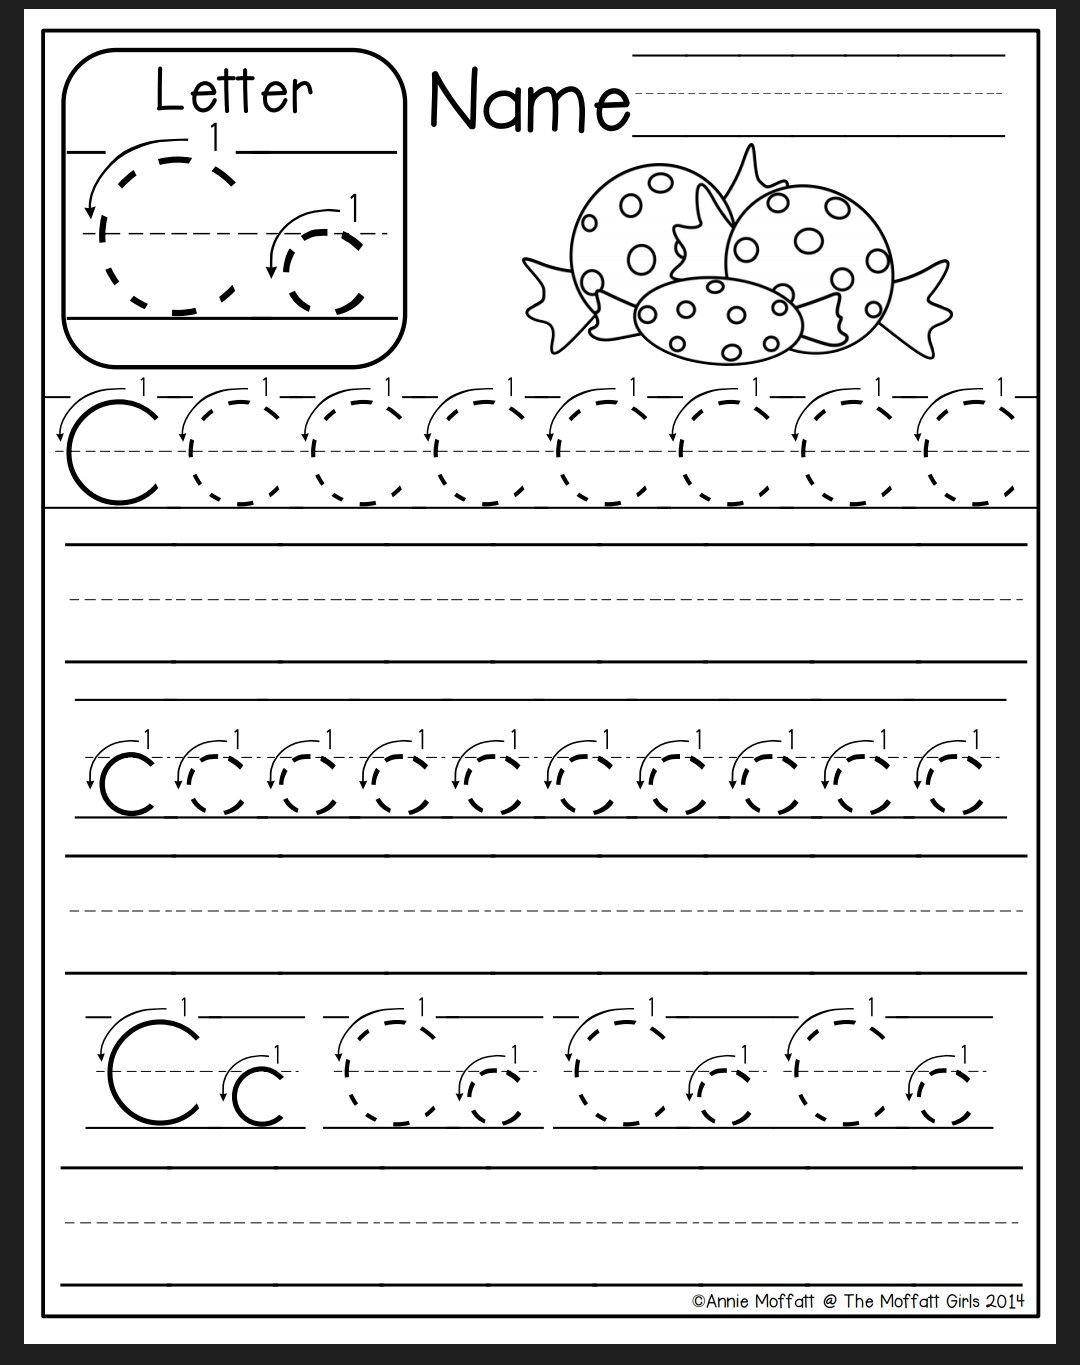 Letter C Worksheet | Preschool Writing, Alphabet Preschool regarding Letter C Worksheets For Pre K